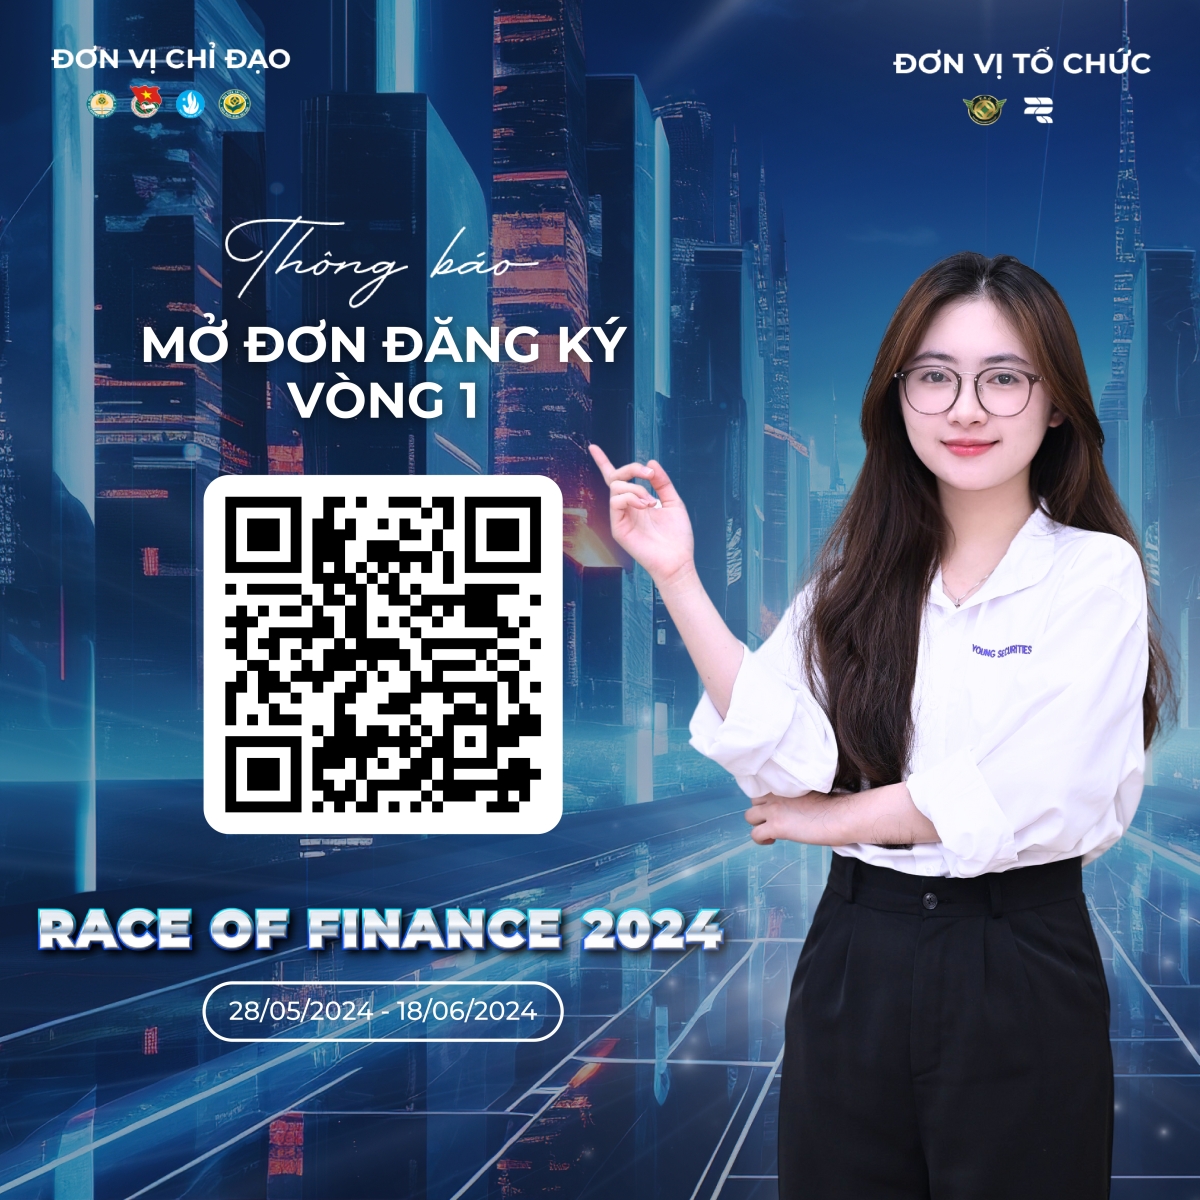 Thông báo mở đăng ký vòng 1 của cuộc thi RACE OF FINANCE 2024